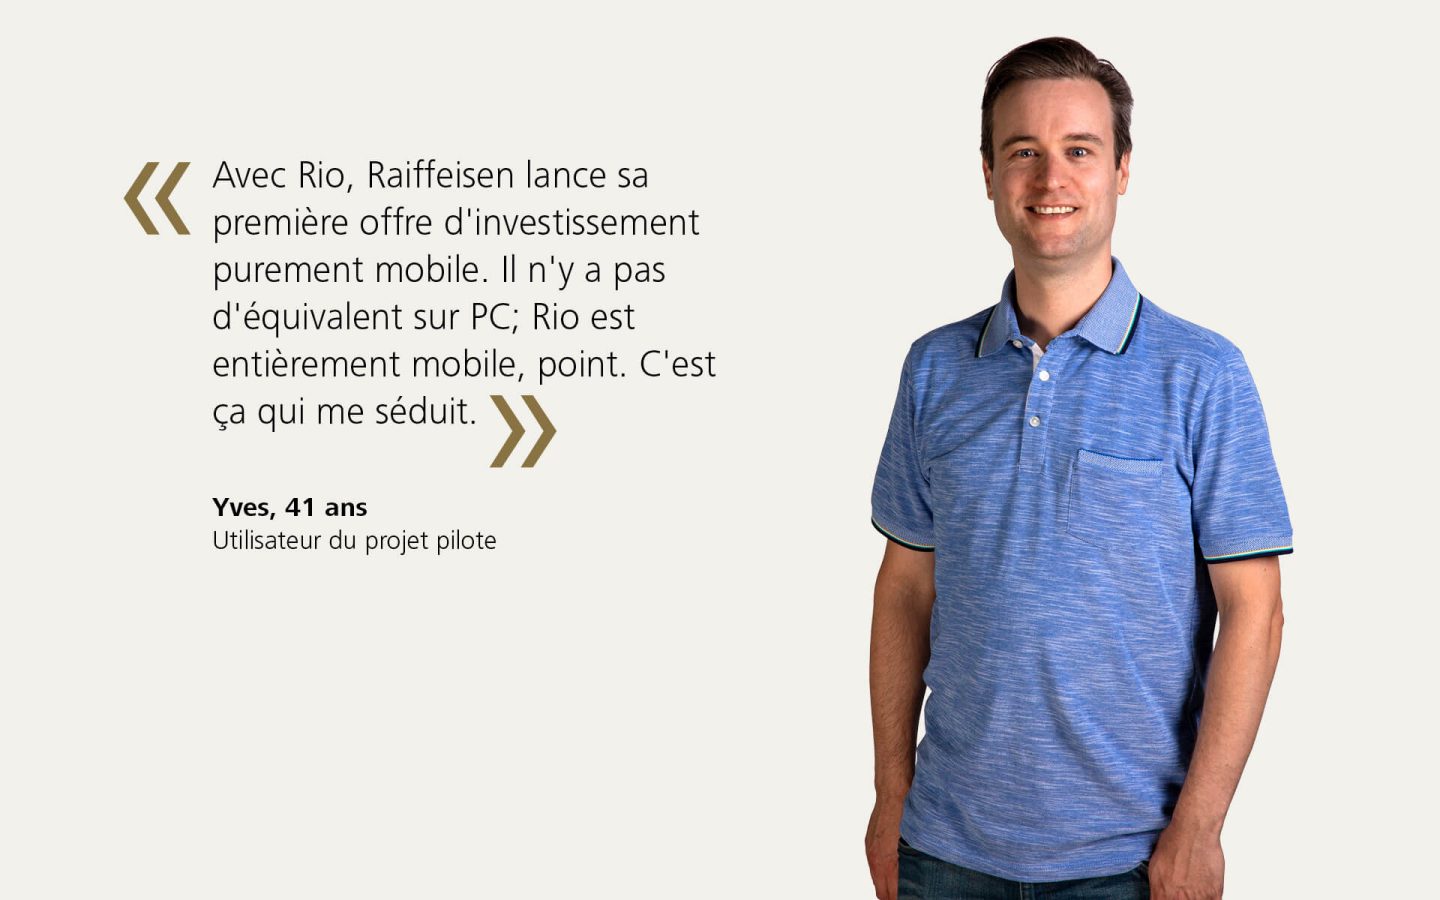 Testimonial: «Avec Rio, Raiffeisen lance sa première offre d'investissement purement mobile. »